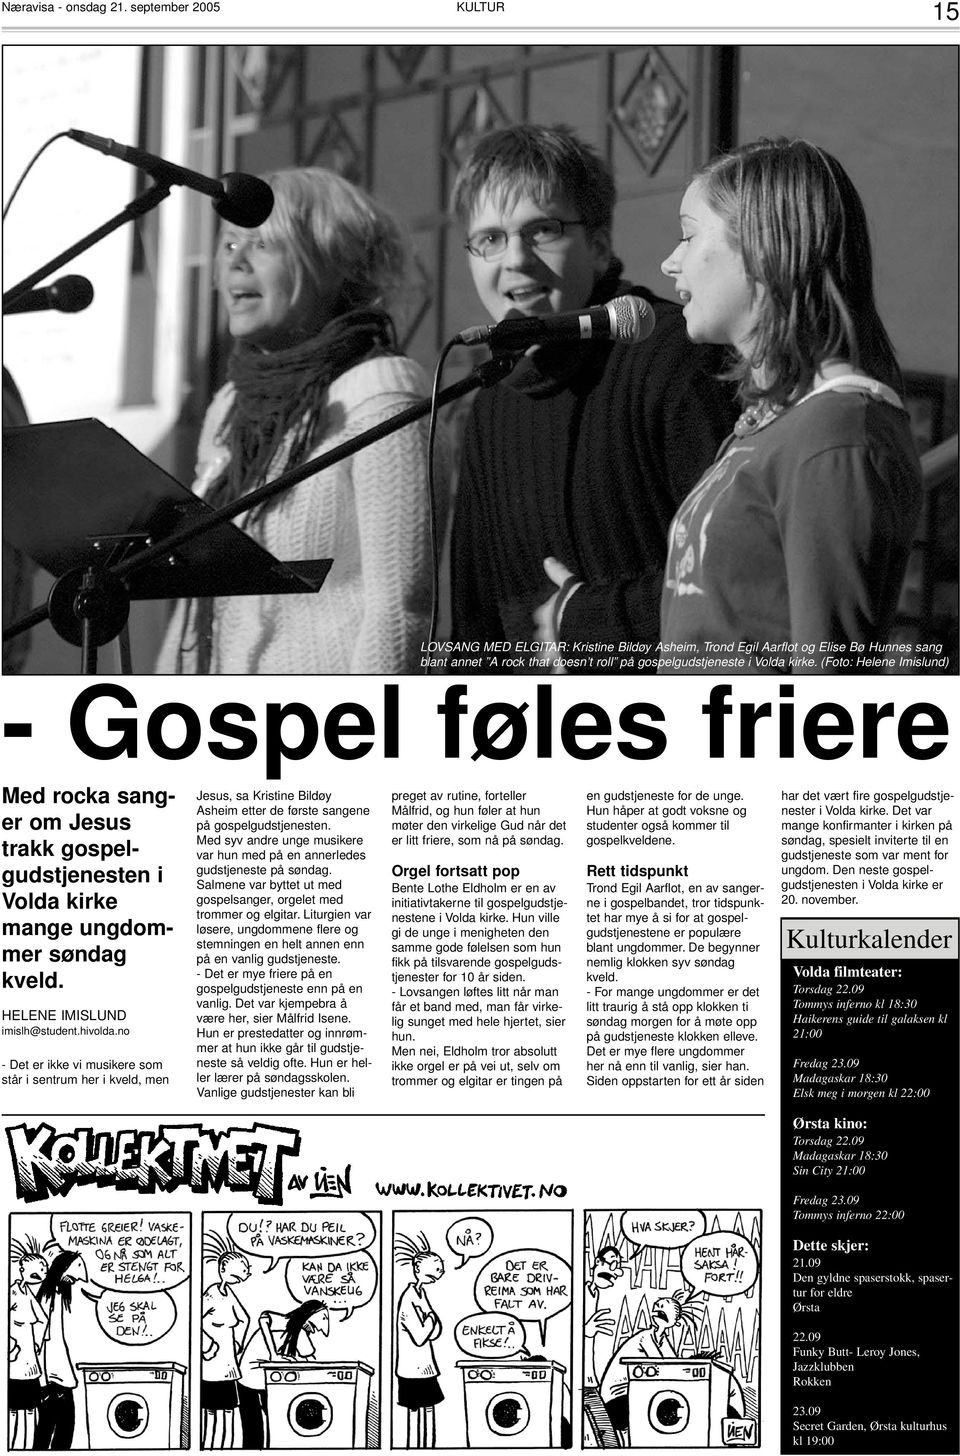 (Foto: Helene Imislund) - Gospel føles friere Med rocka sanger om Jesus trakk gospelgudstjenesten i Volda kirke mange ungdommer søndag kveld. HELENE IMISLUND imislh@student.hivolda.